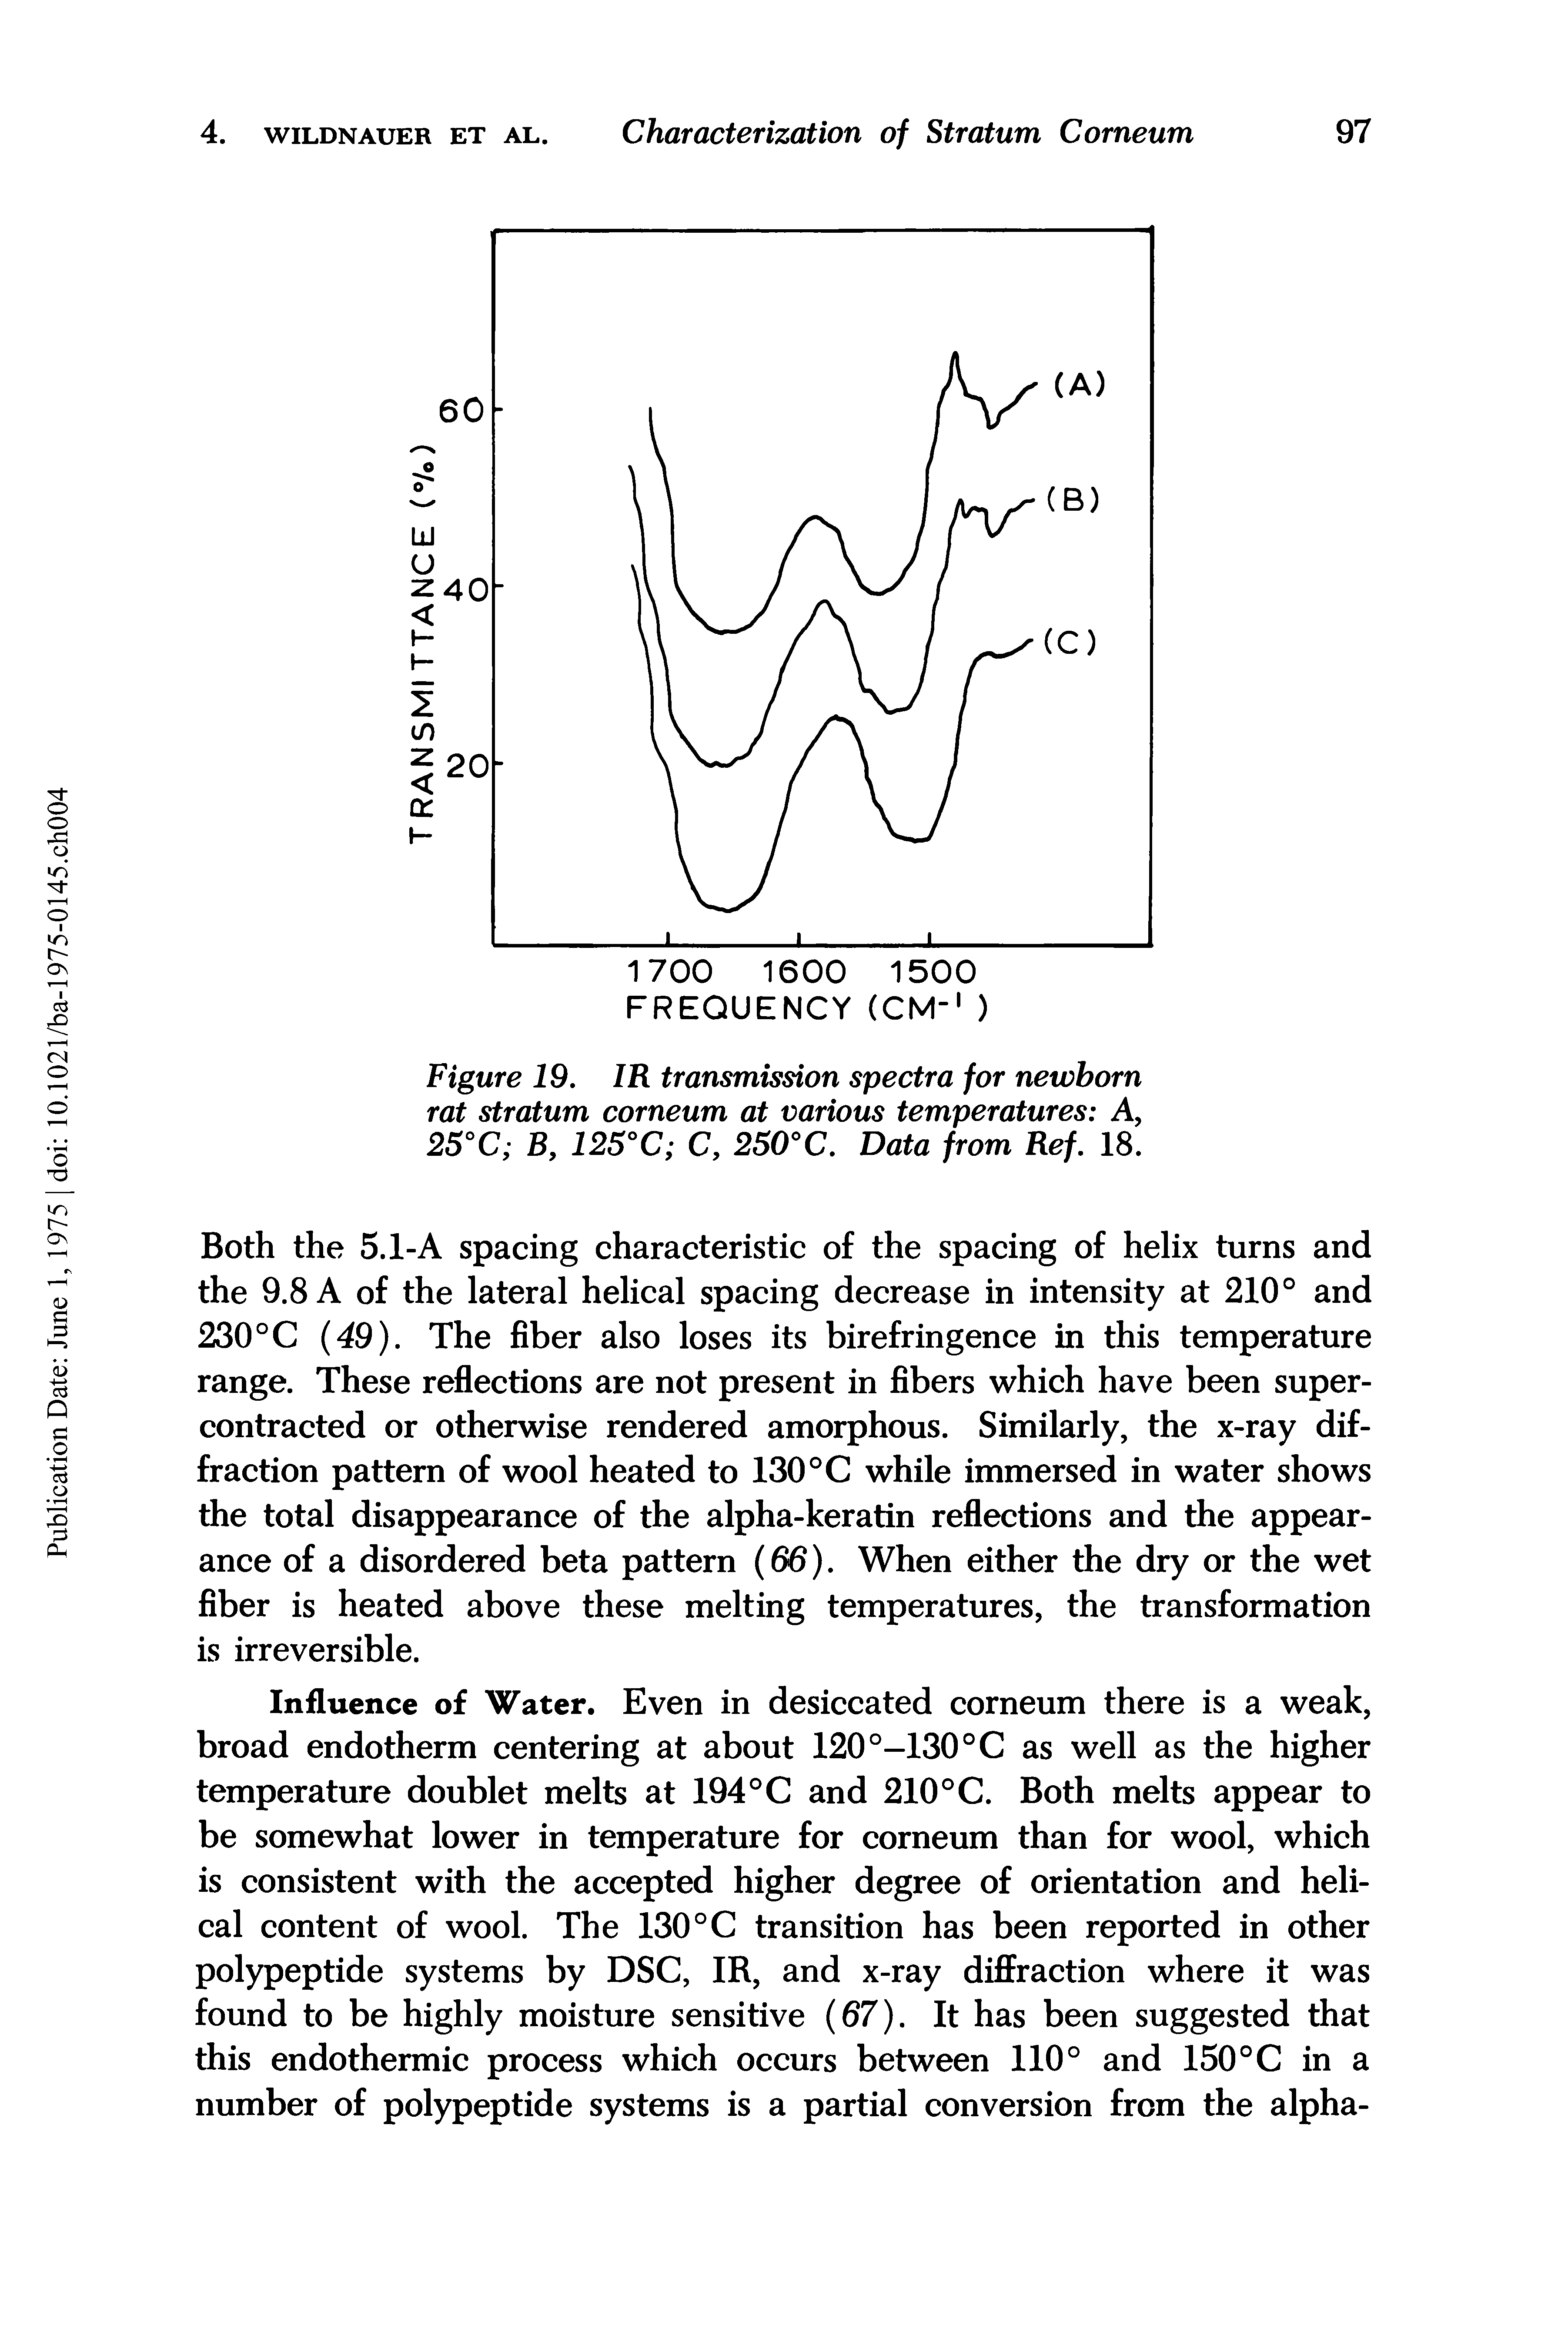 Figure 19. IR transmission spectra for newborn rat stratum corneum at various temperatures A, 25°C B, 125°C C, 250°C. Data from Ref. 18.